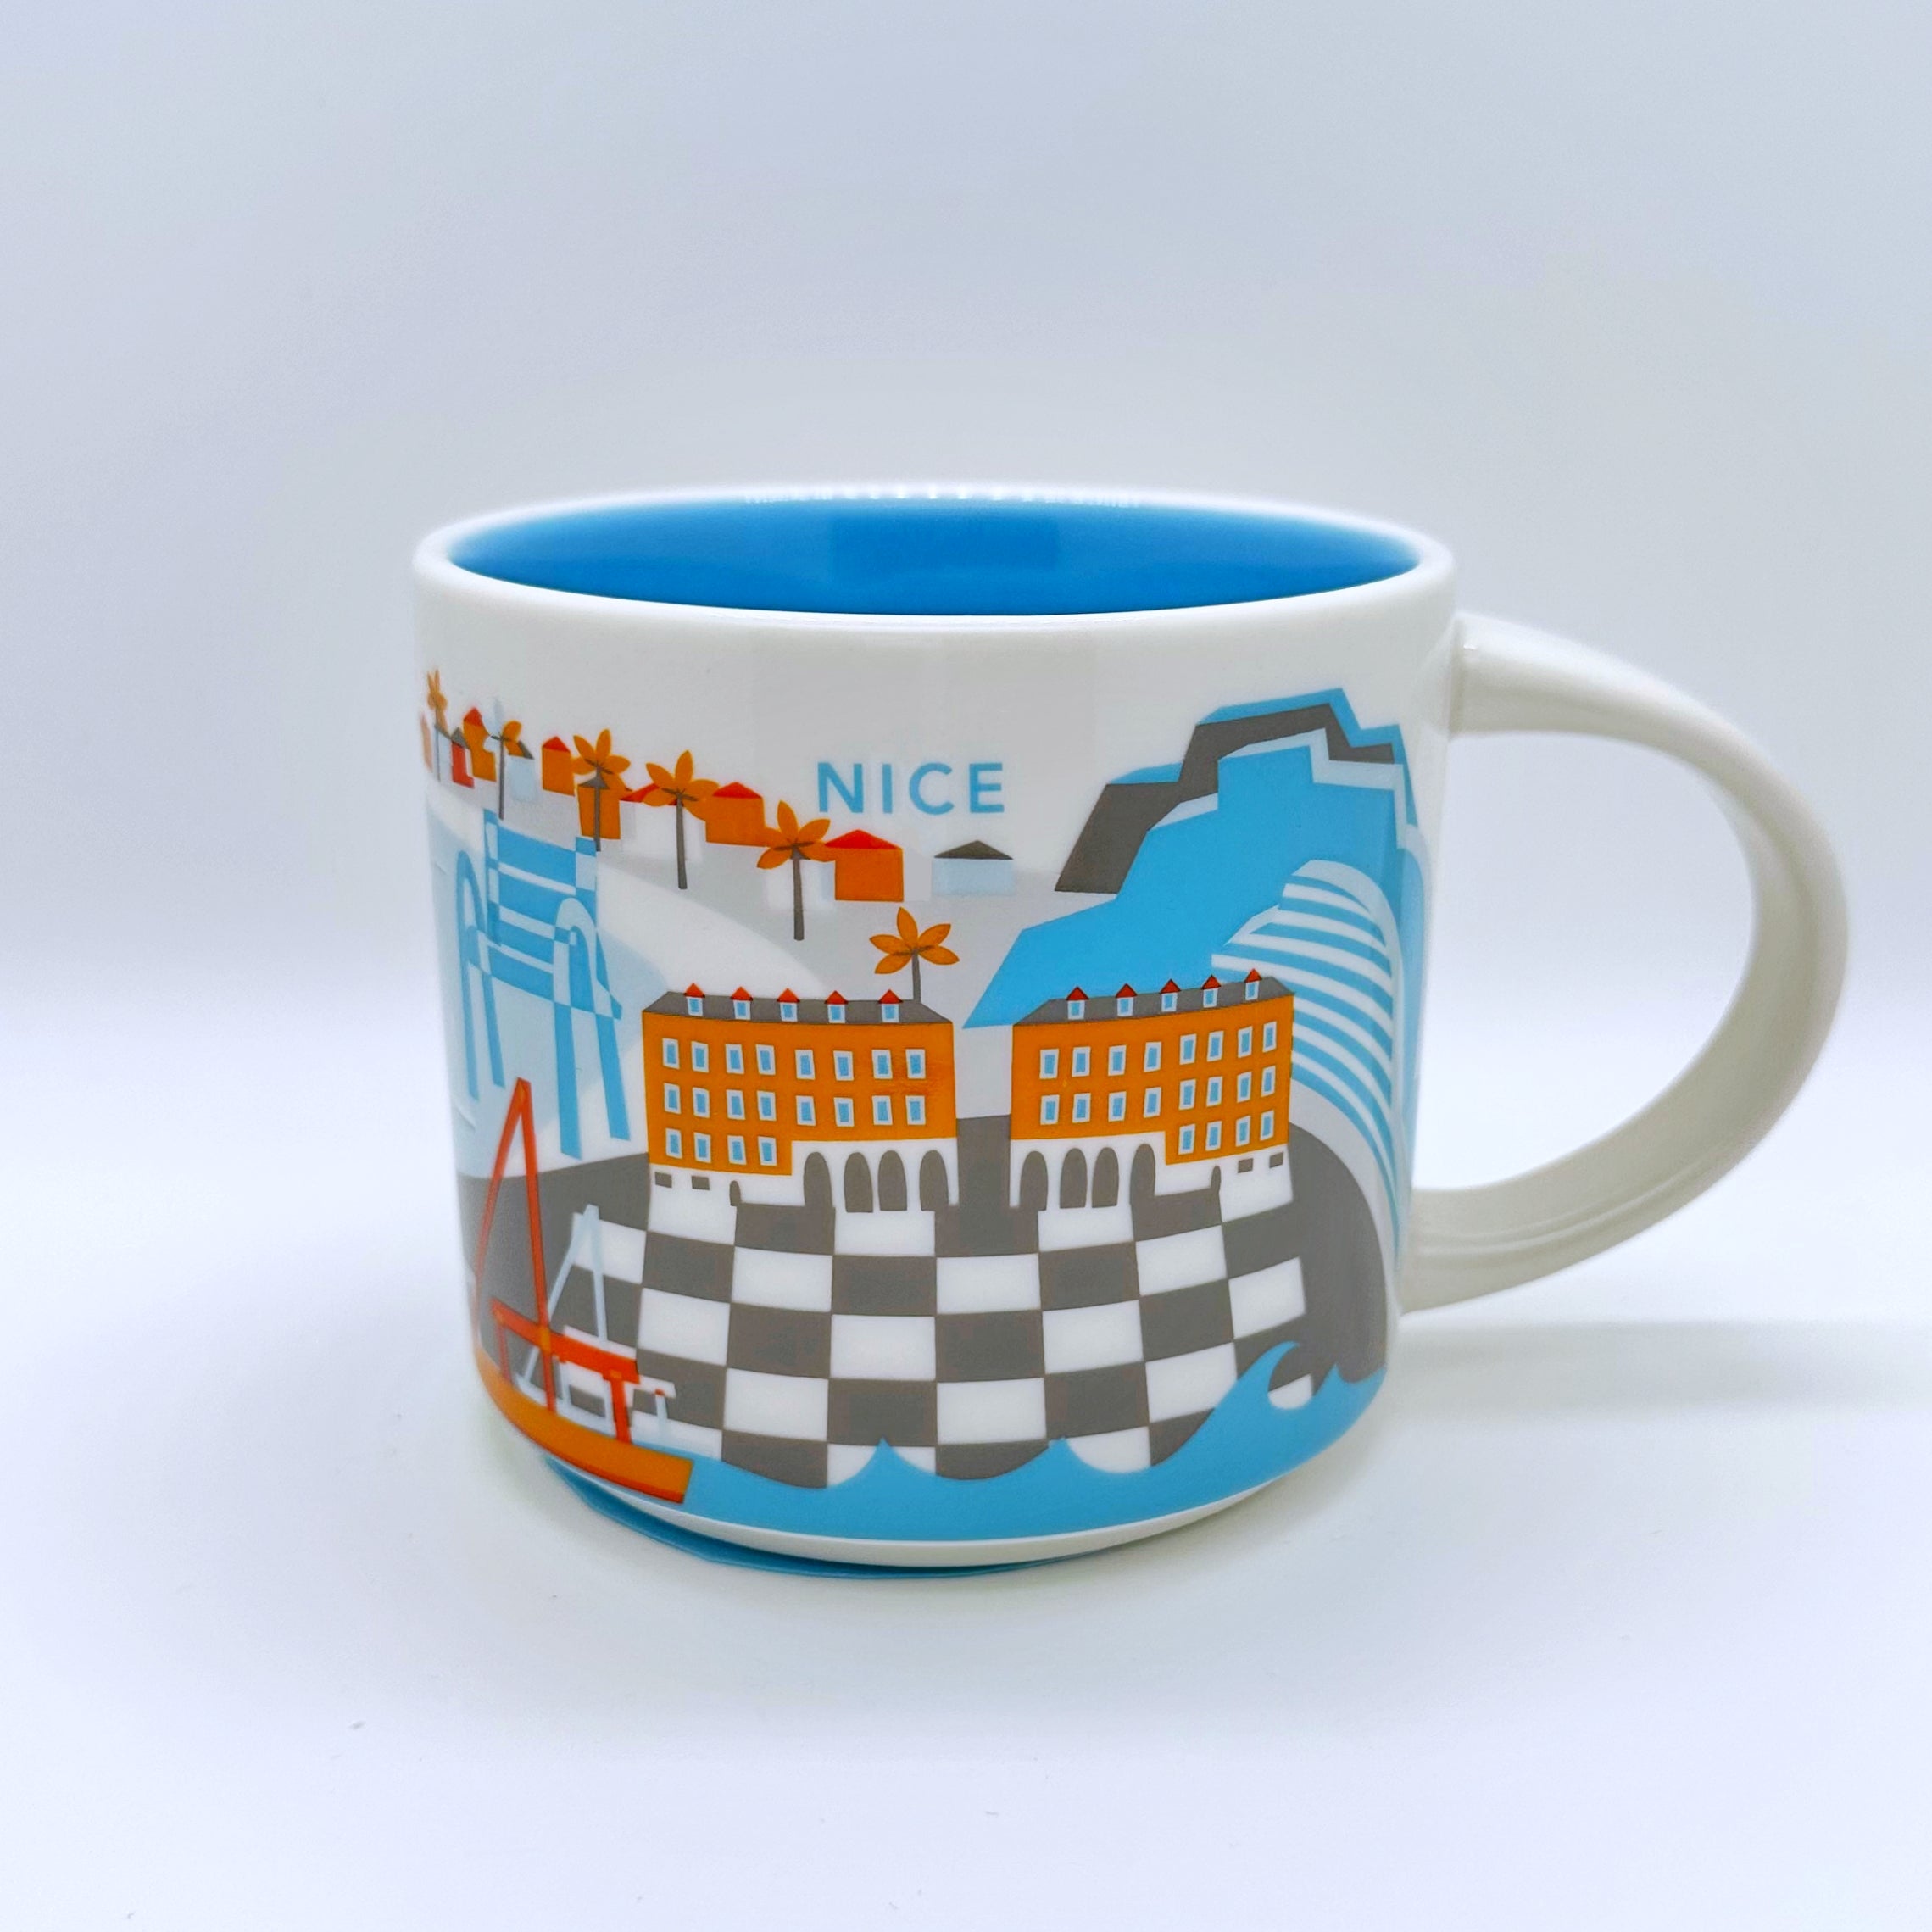 Kaffee Cappuccino oder Tee Tasse von Starbucks mit gemalten Bildern aus der Stadt Nizza